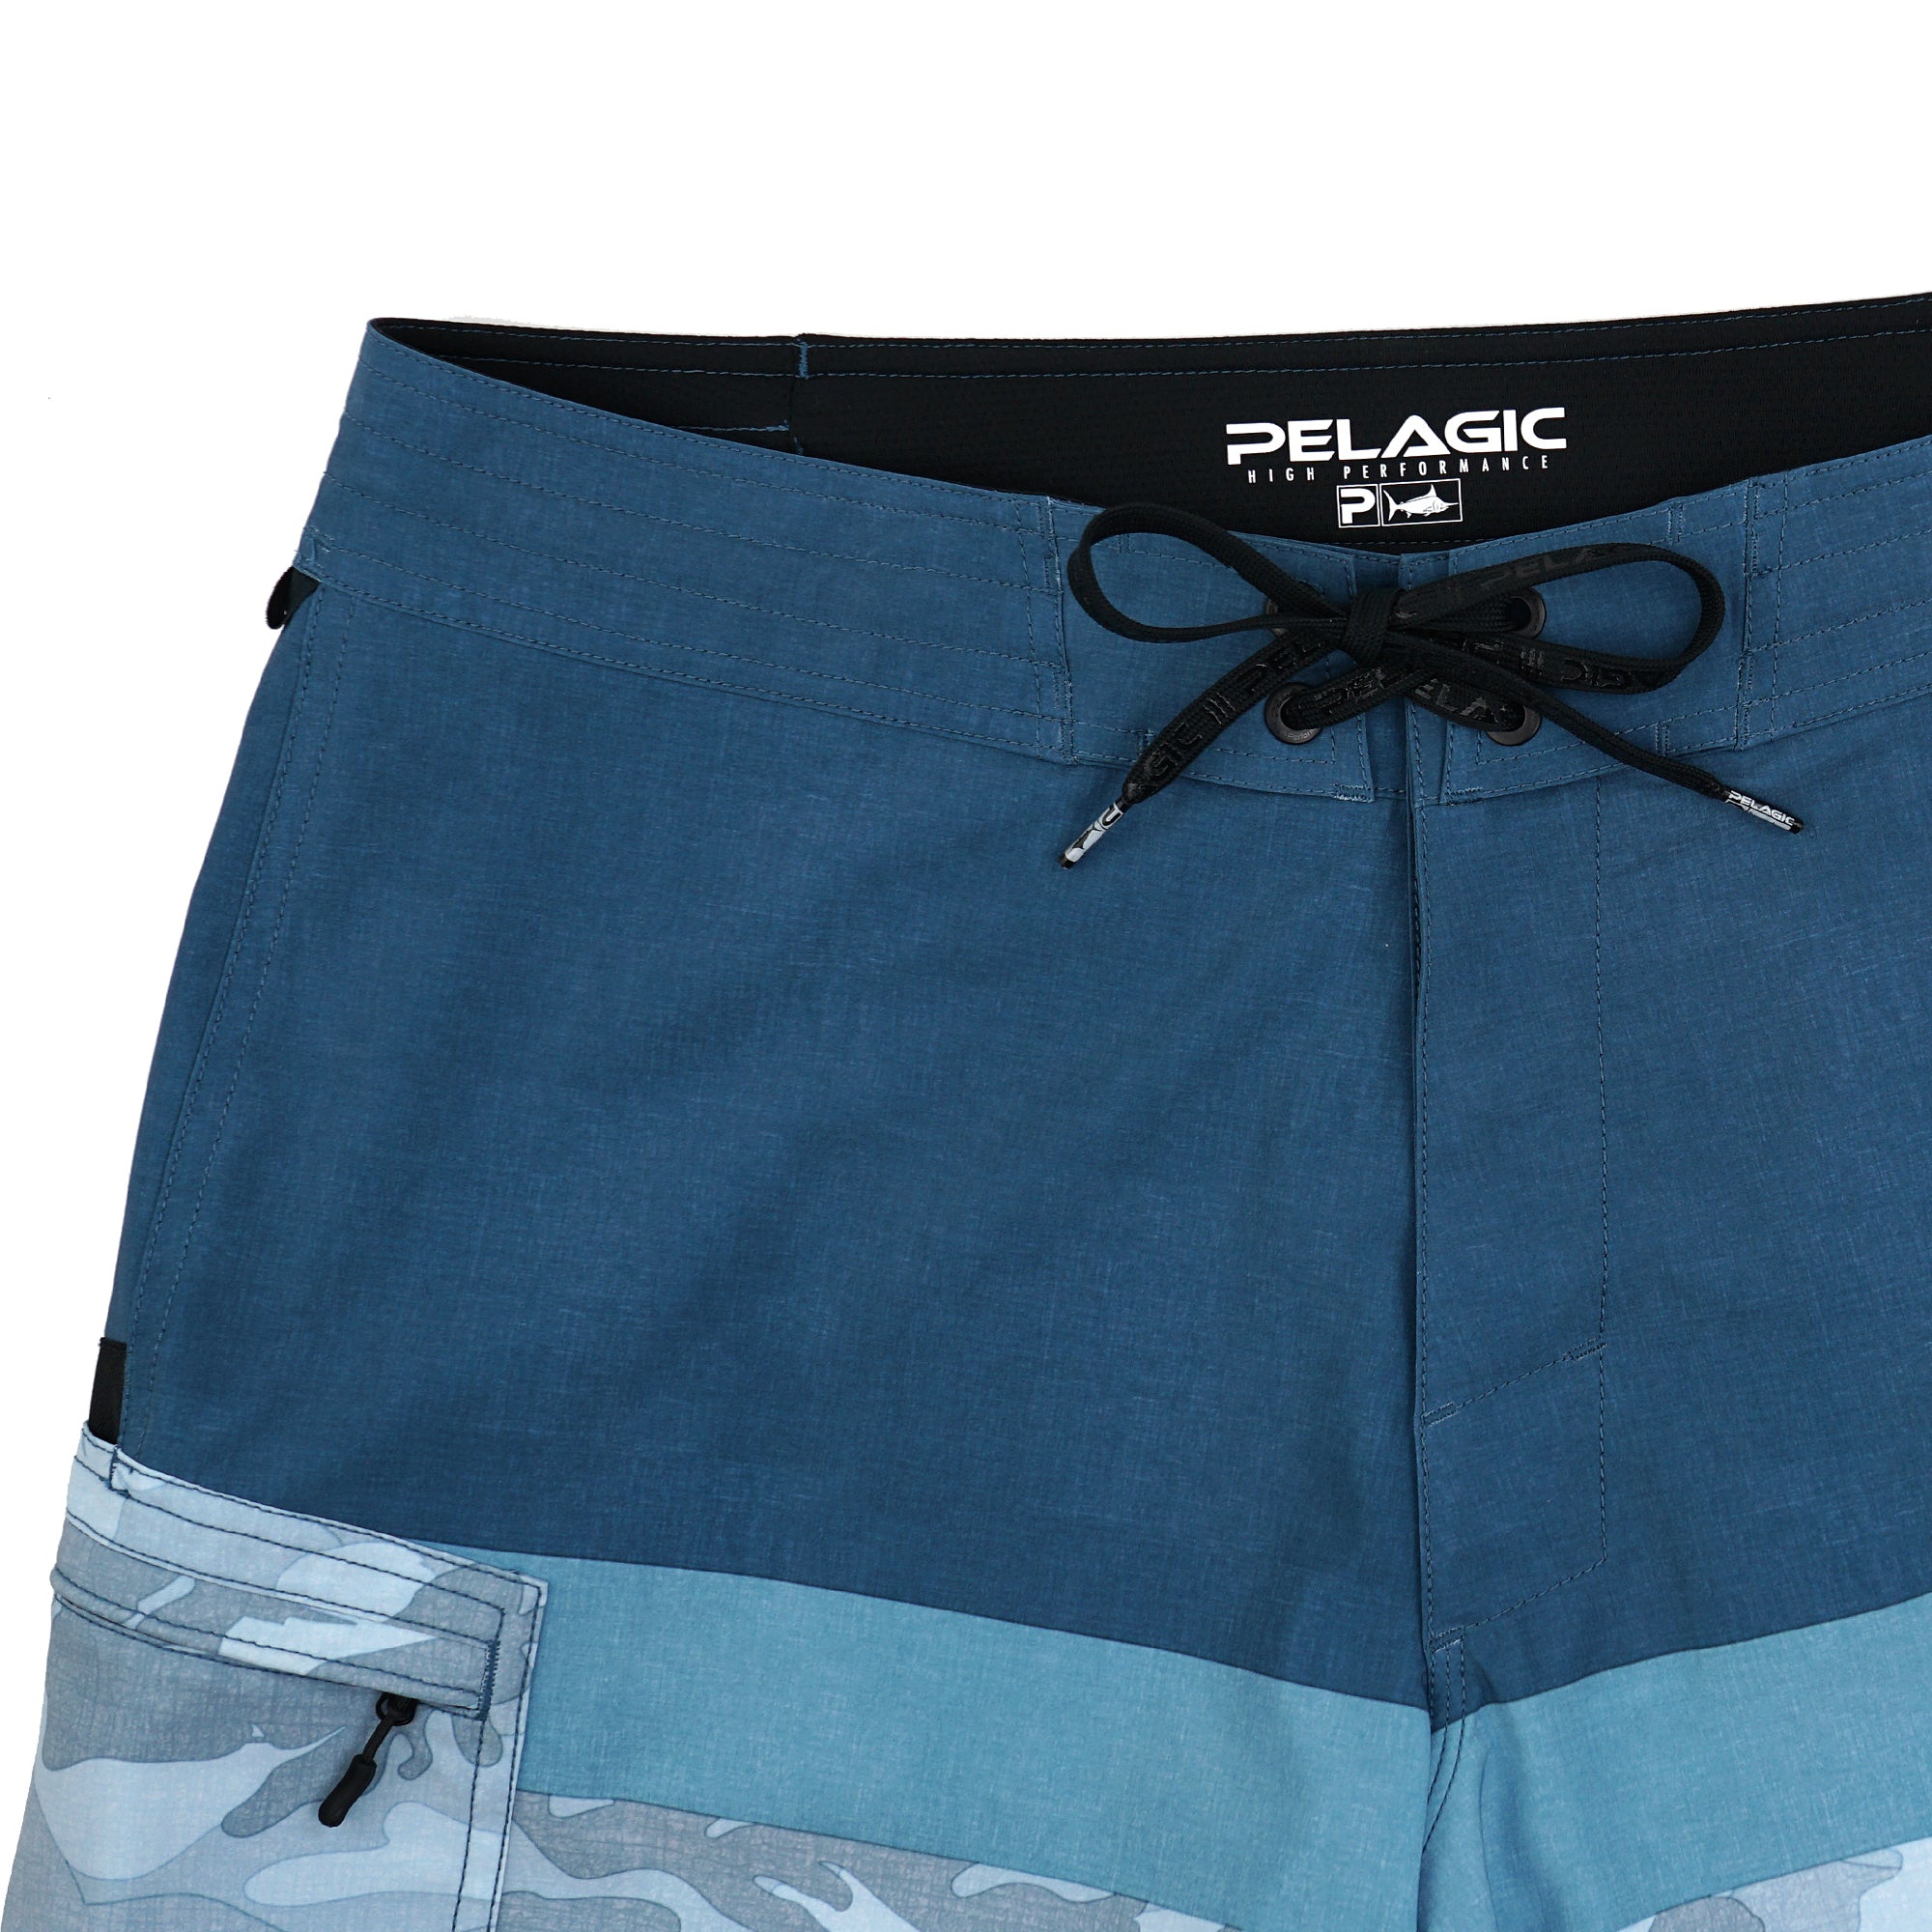 MENS PELAGIC FISH Camo Shorts Size 32 Brand new w/ tags $30.00 - PicClick